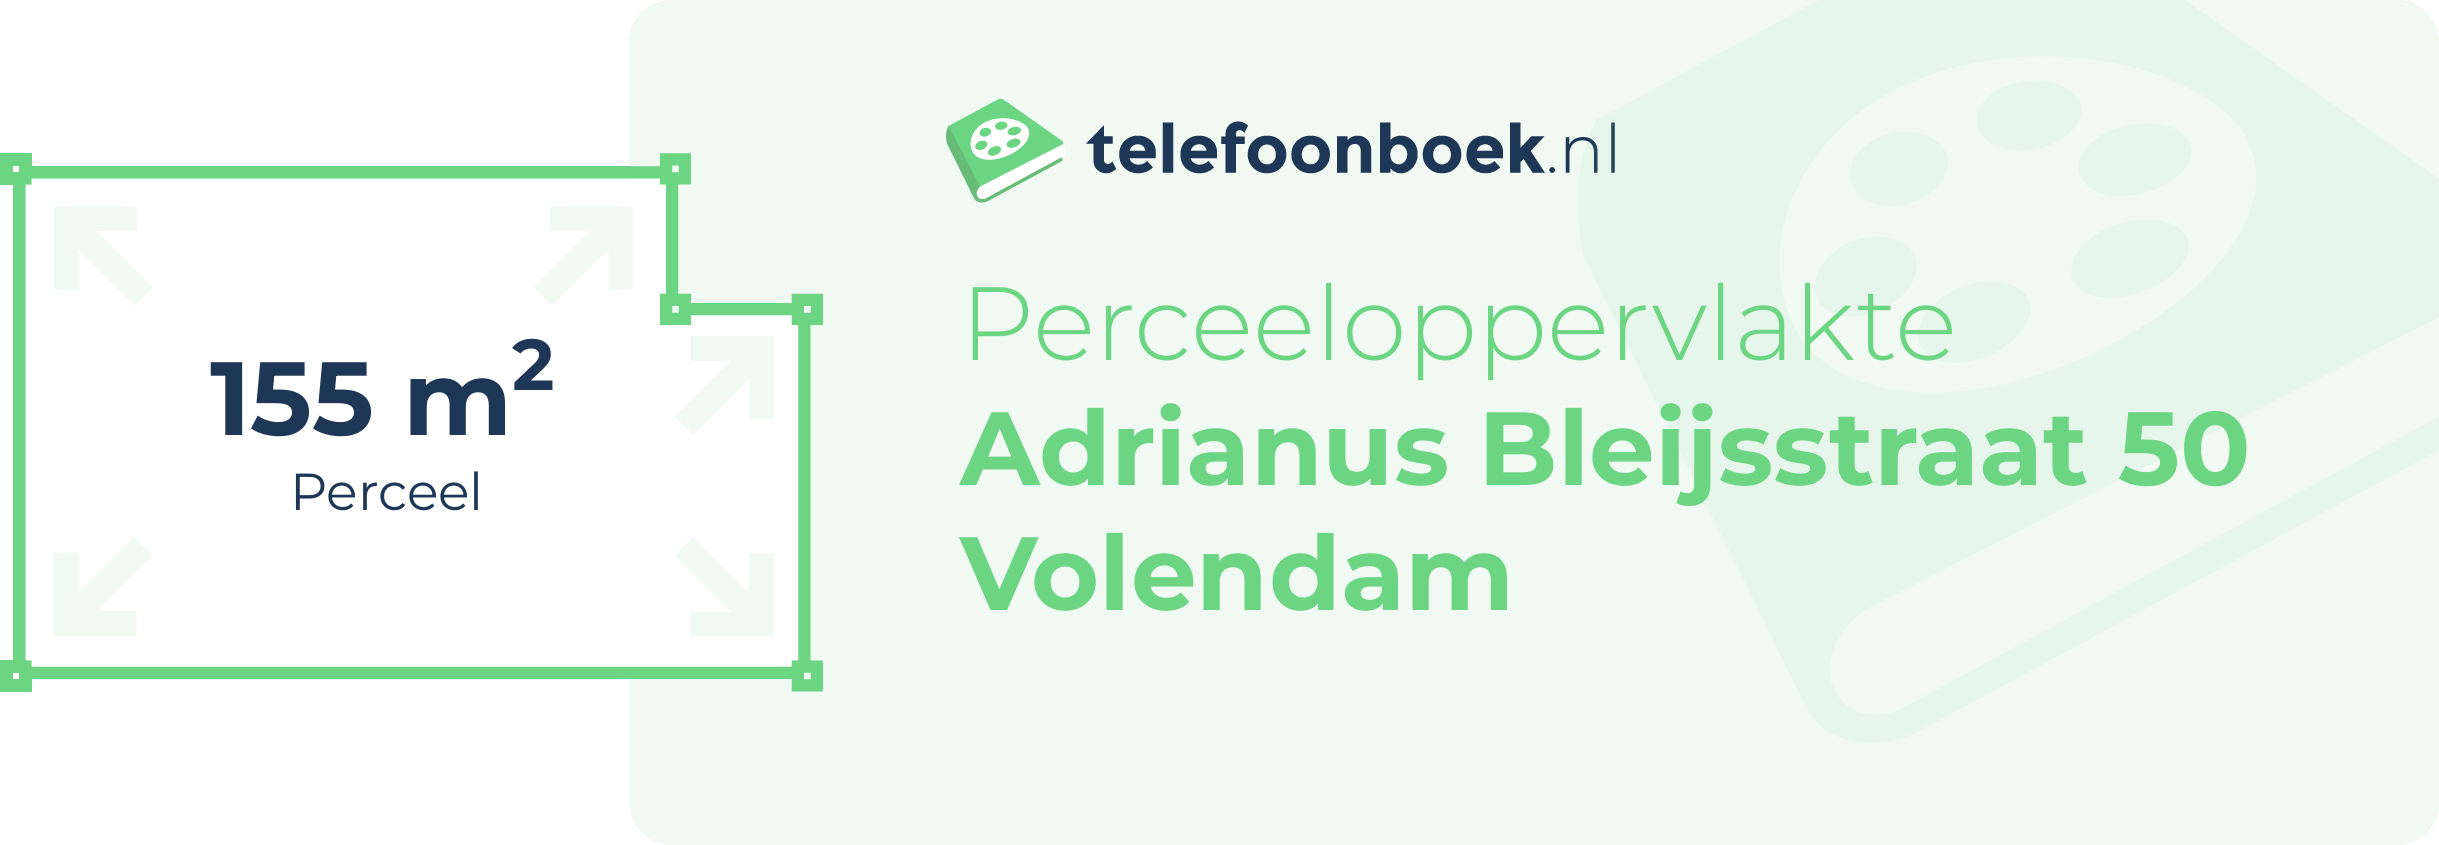 Perceeloppervlakte Adrianus Bleijsstraat 50 Volendam